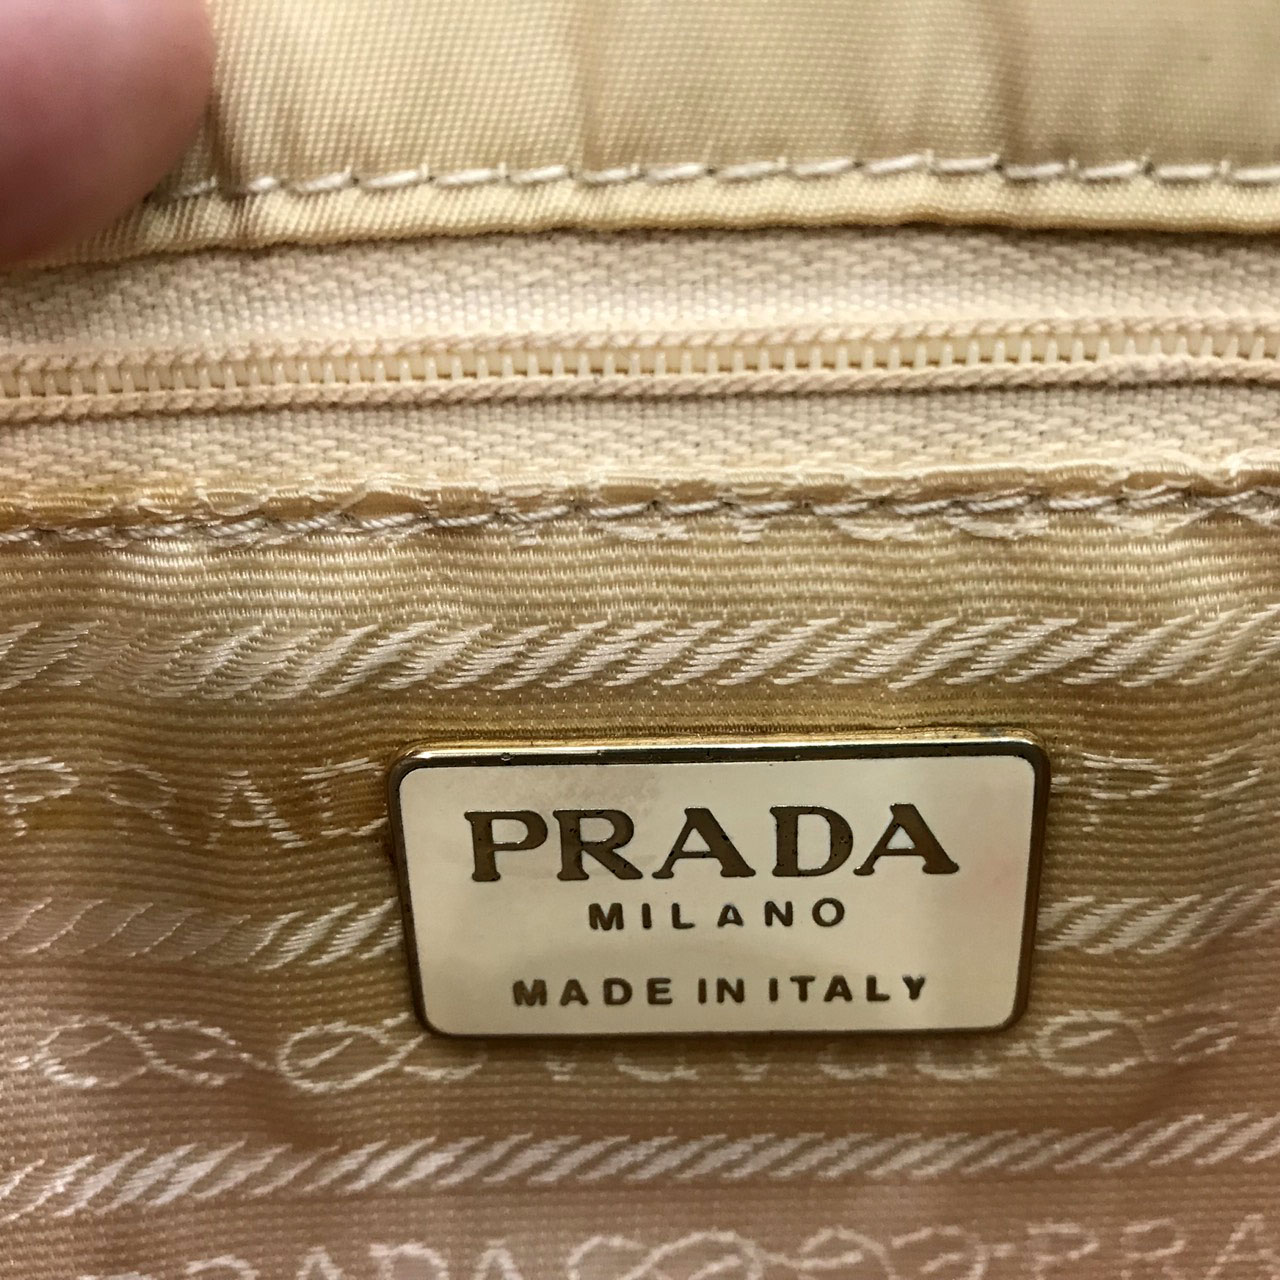 Used Prada Vintage Belt Bag in Beige Nylon GHW - Moppetbrandname